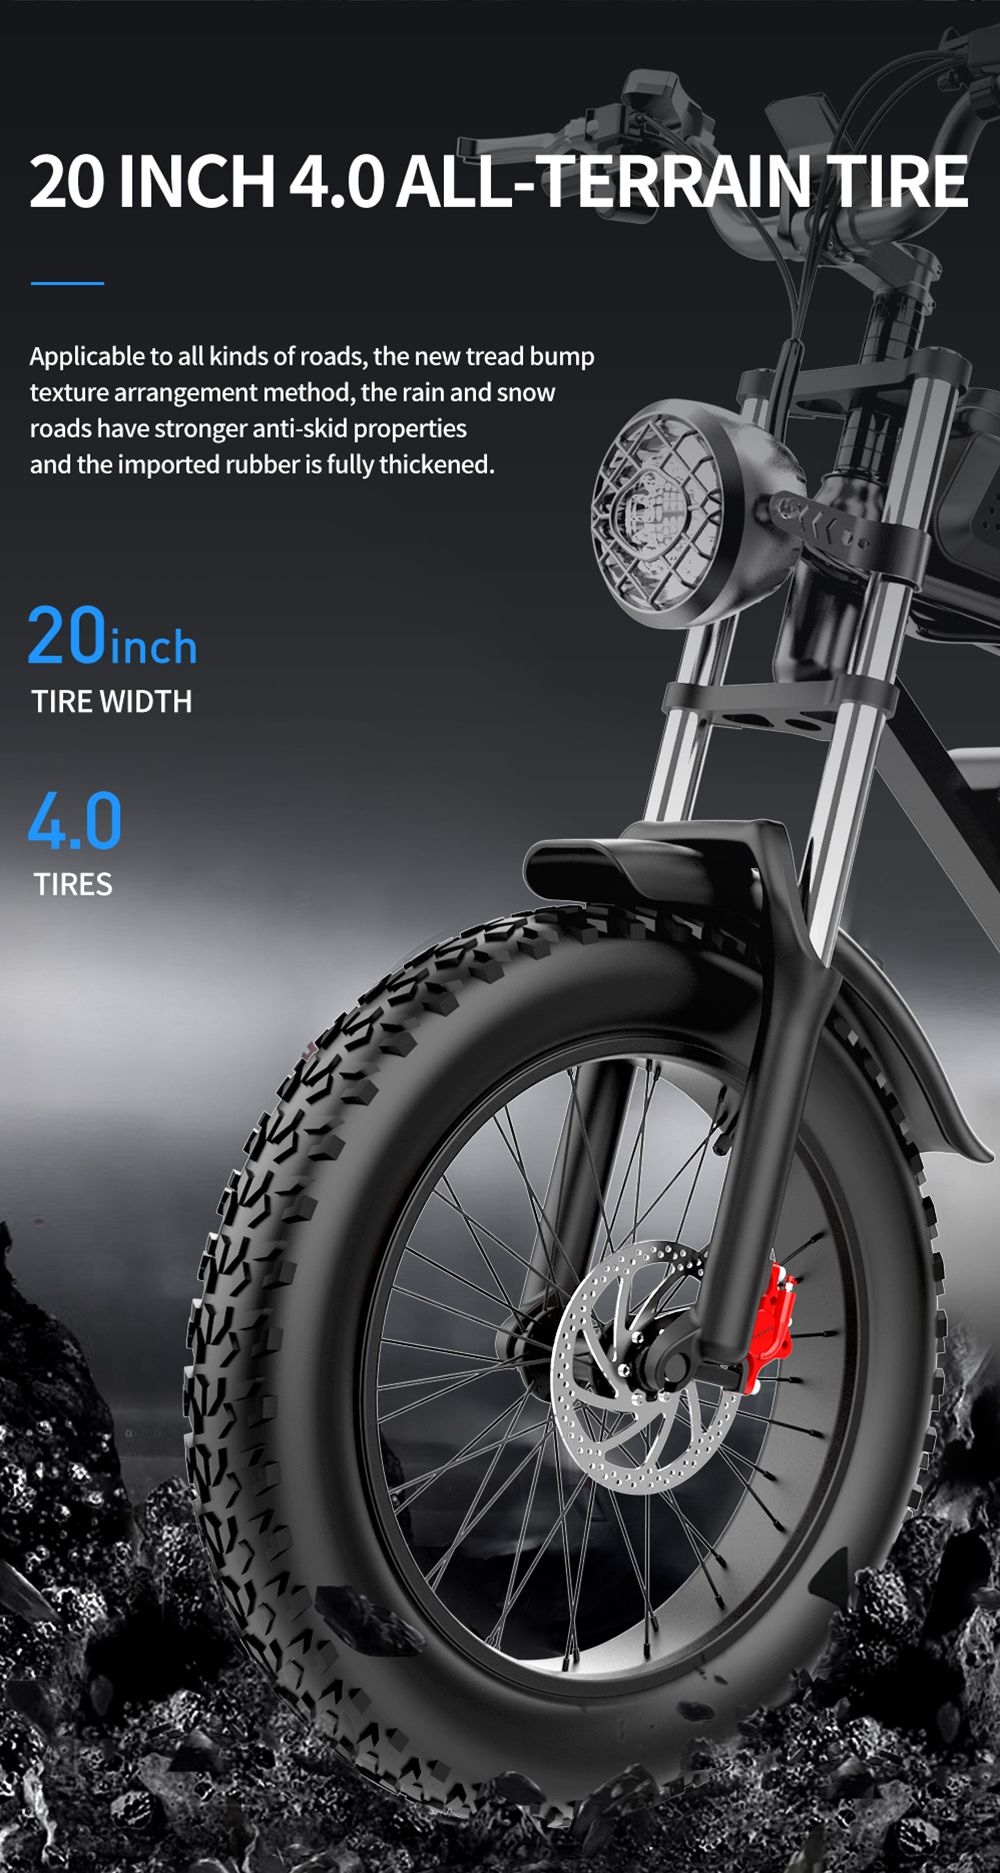 Bicicleta eléctrica Ridstar Q20, motor sin escobillas de 1000 W, neumáticos gruesos de 20 * 4 pulgadas, batería extraíble de 48 V, 20 Ah, velocidad máxima de 30 mph, alcance máximo de 75 millas, freno de disco hidráulico